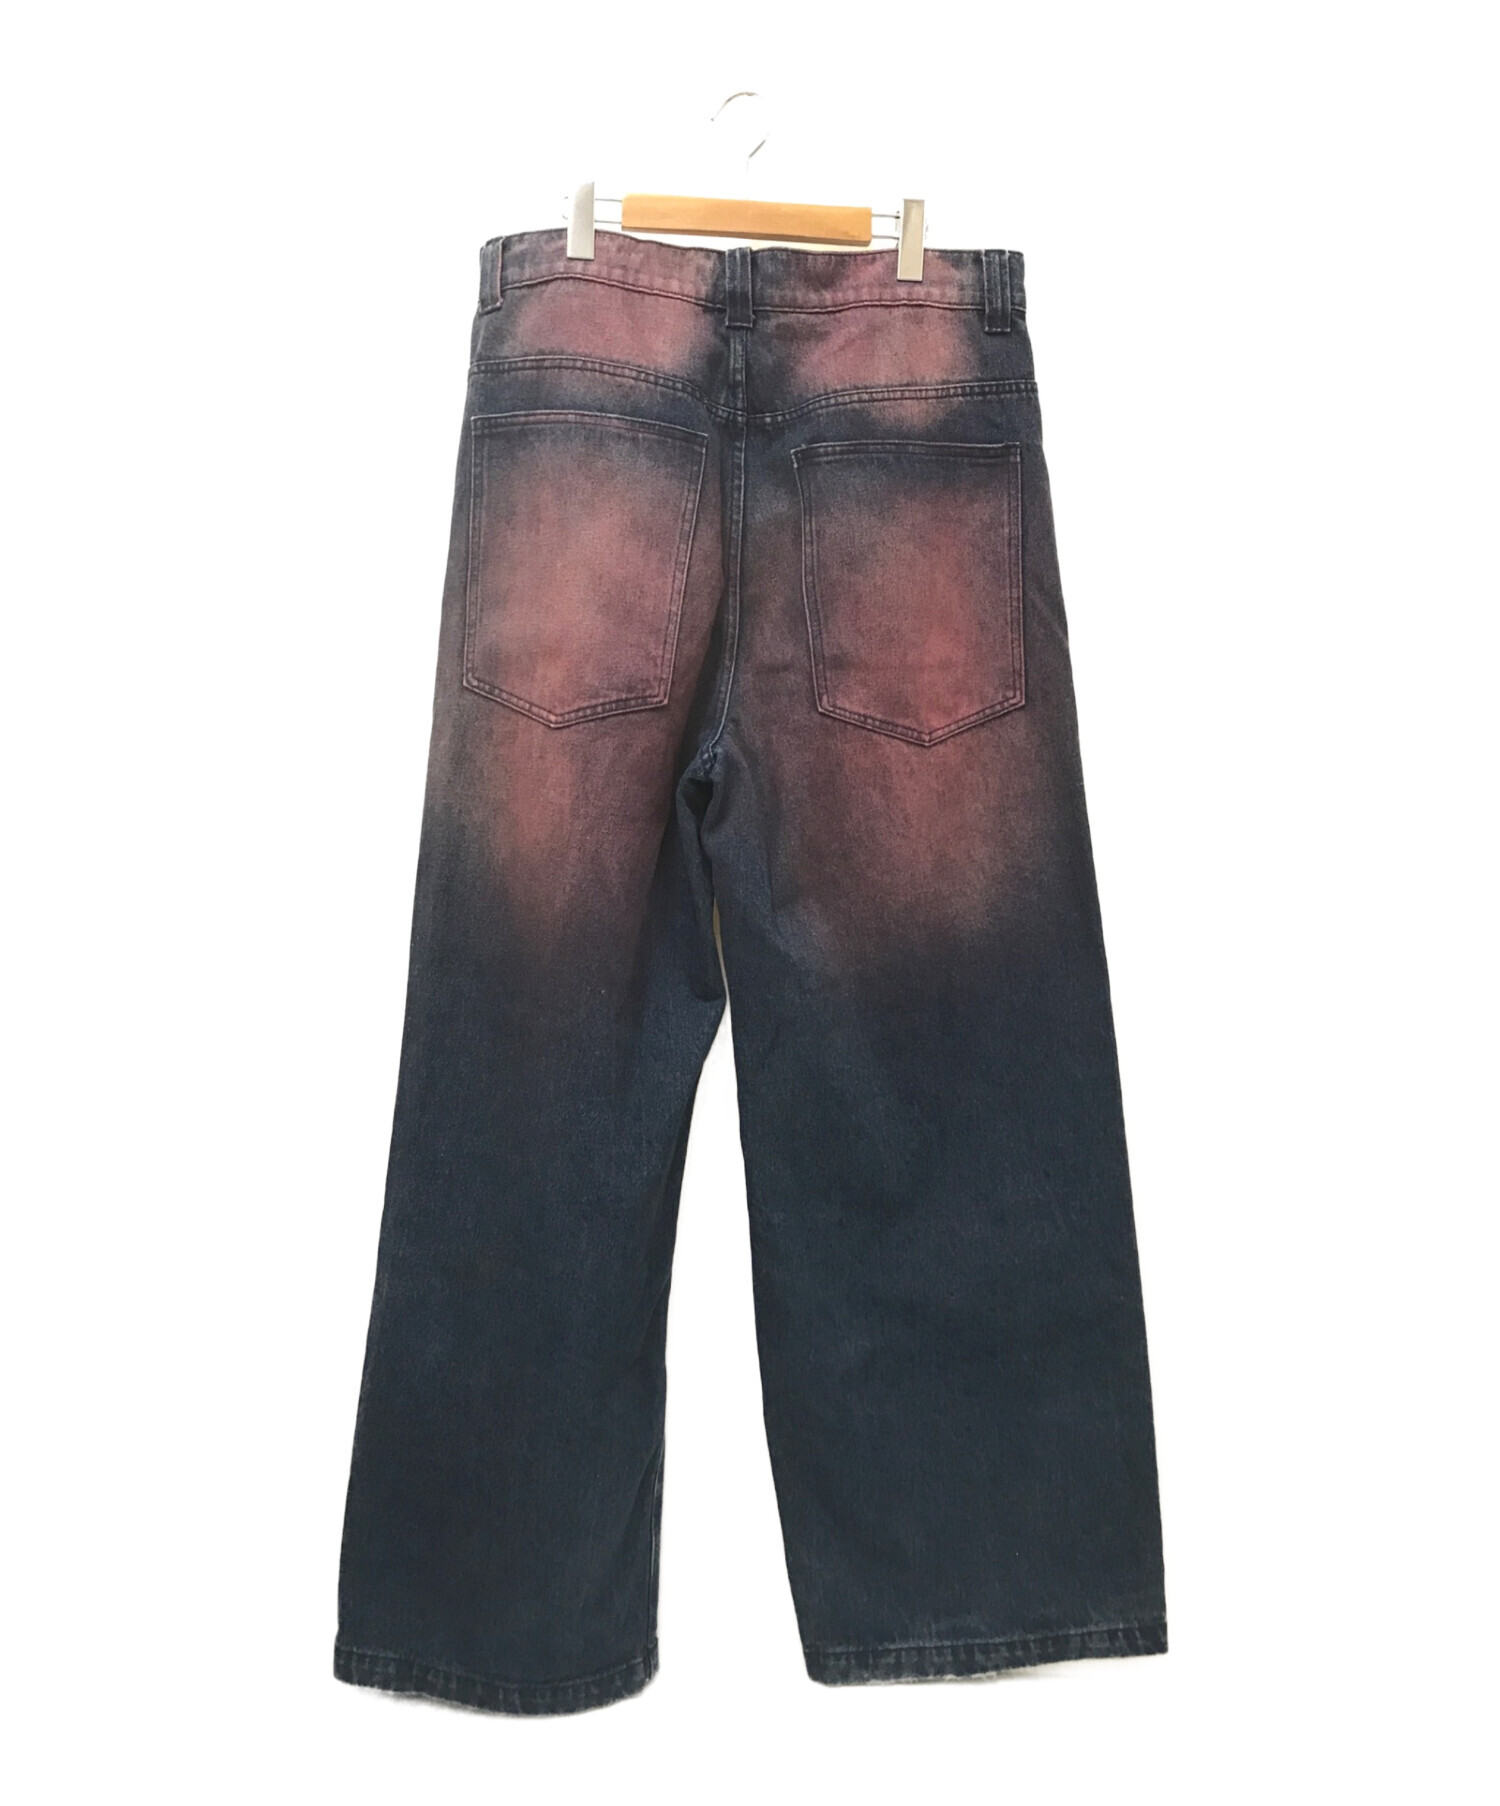 JADED LONDON Colossus Fit Jeans デニム W362回ほど着用しました - パンツ